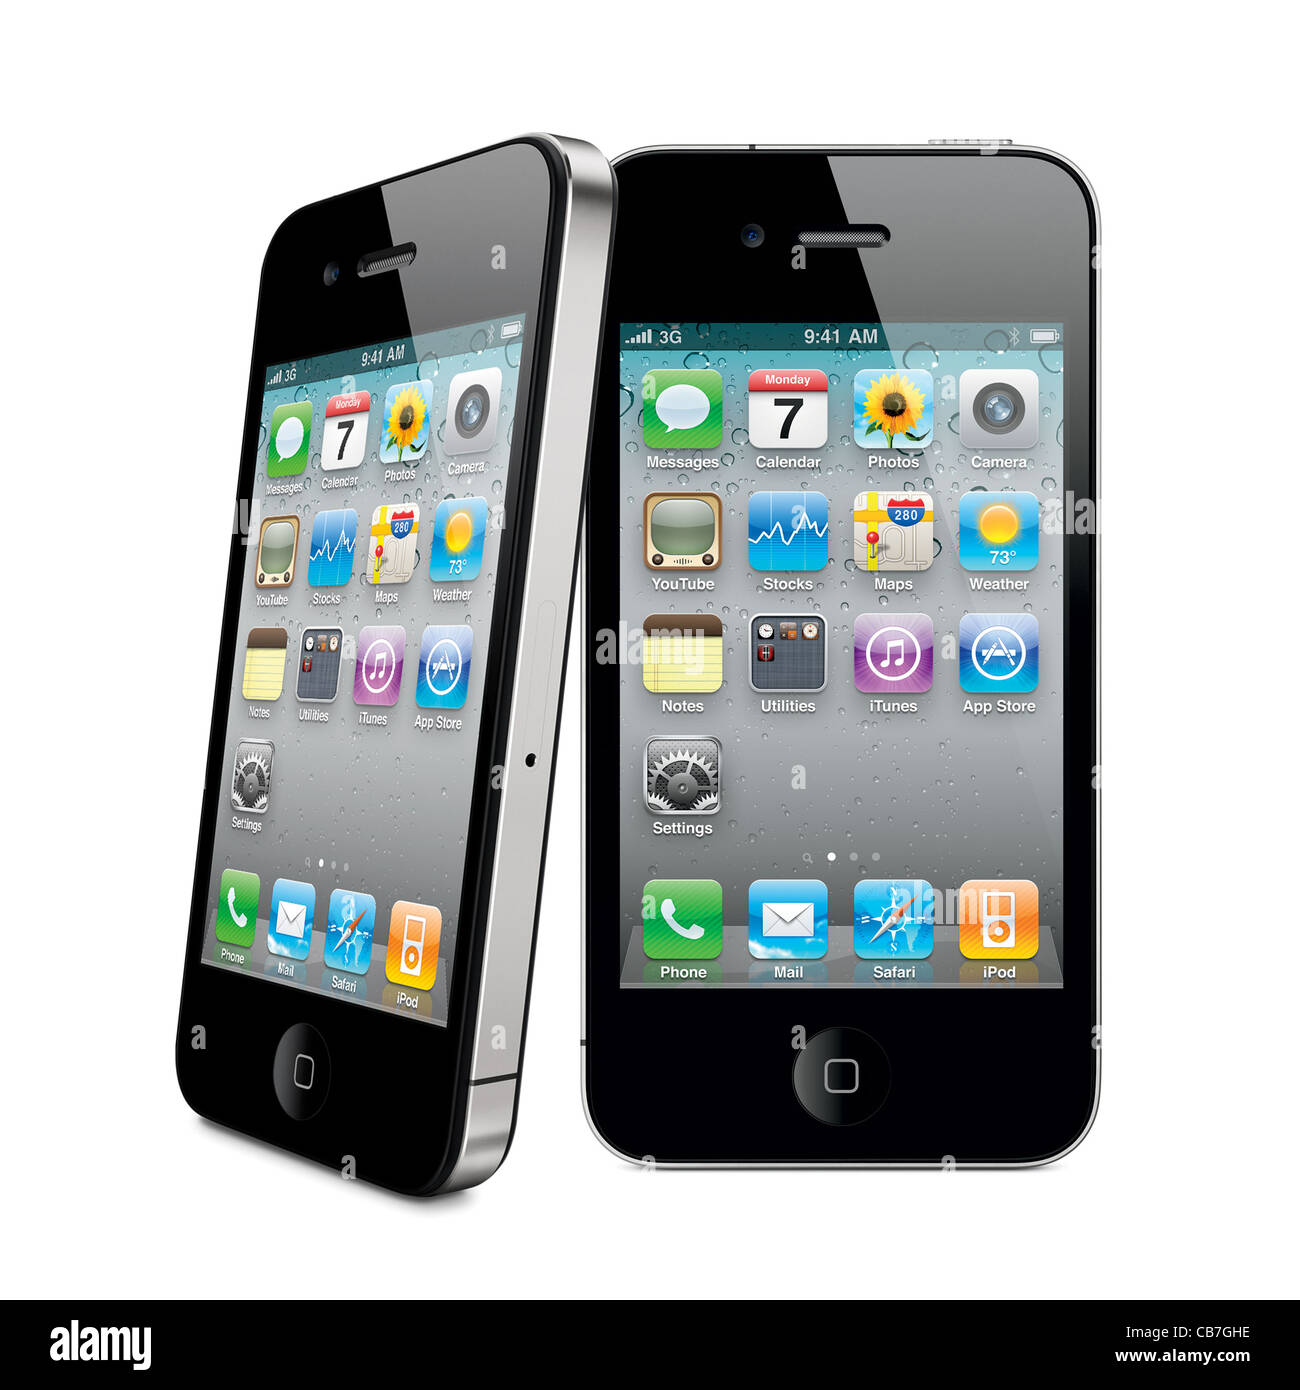 Zwei iPhone 4 s Apple Smartphone mit Desktop-Symbole auf dem Display. Isoliert auf weißem Hintergrund Stockfoto